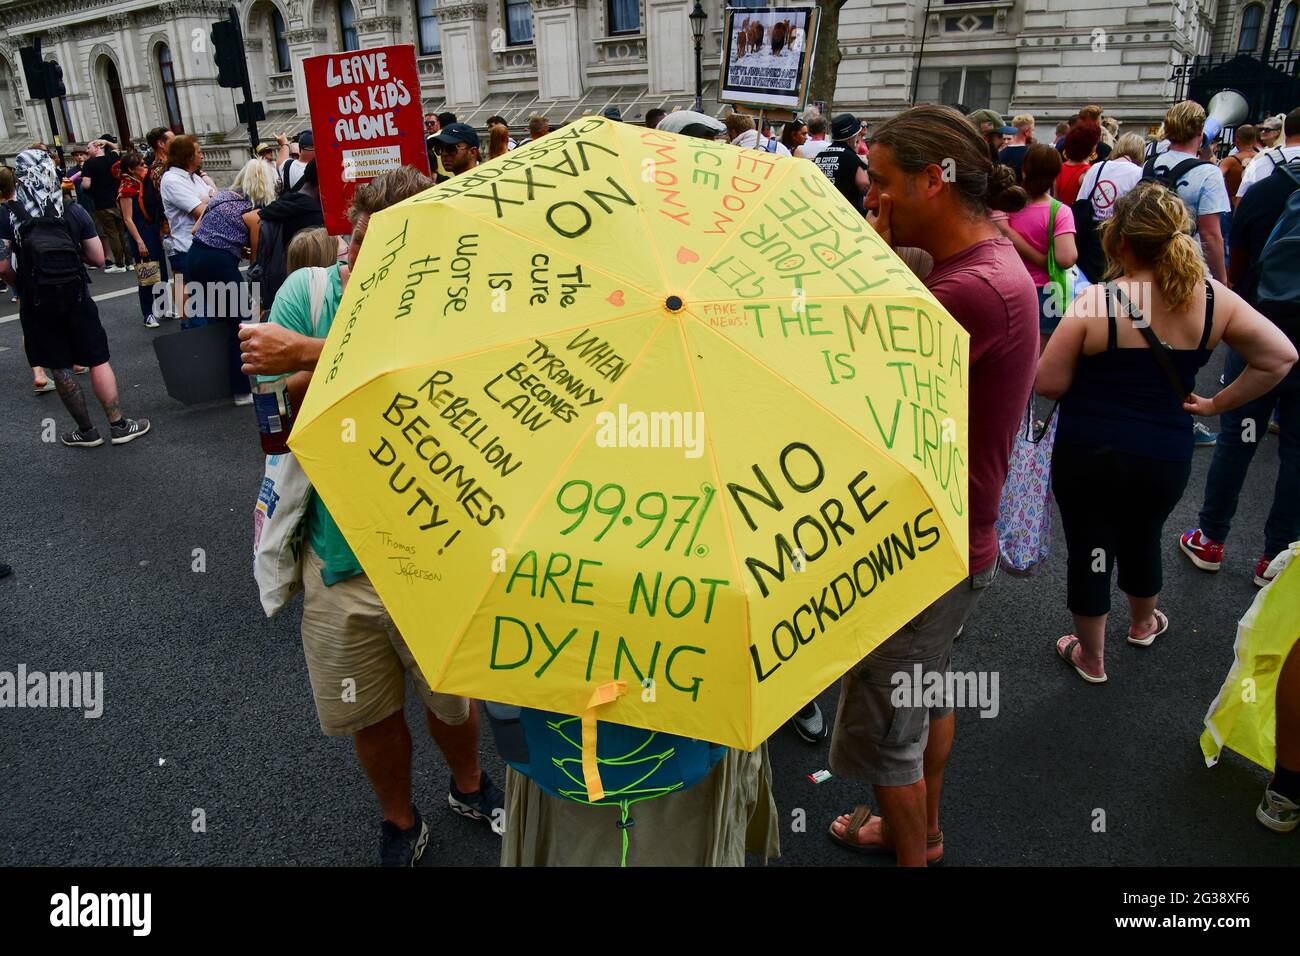 Londres, Reino Unido. 14th de junio de 2021. Los manifestantes continúan protestando hasta que Boris Johnson confirma el bloqueo retrasado hasta el 19 de julio en las afueras de Downing street el 14th de junio de 2021, Londres, Reino Unido. Crédito: Picture Capital/Alamy Live News Foto de stock